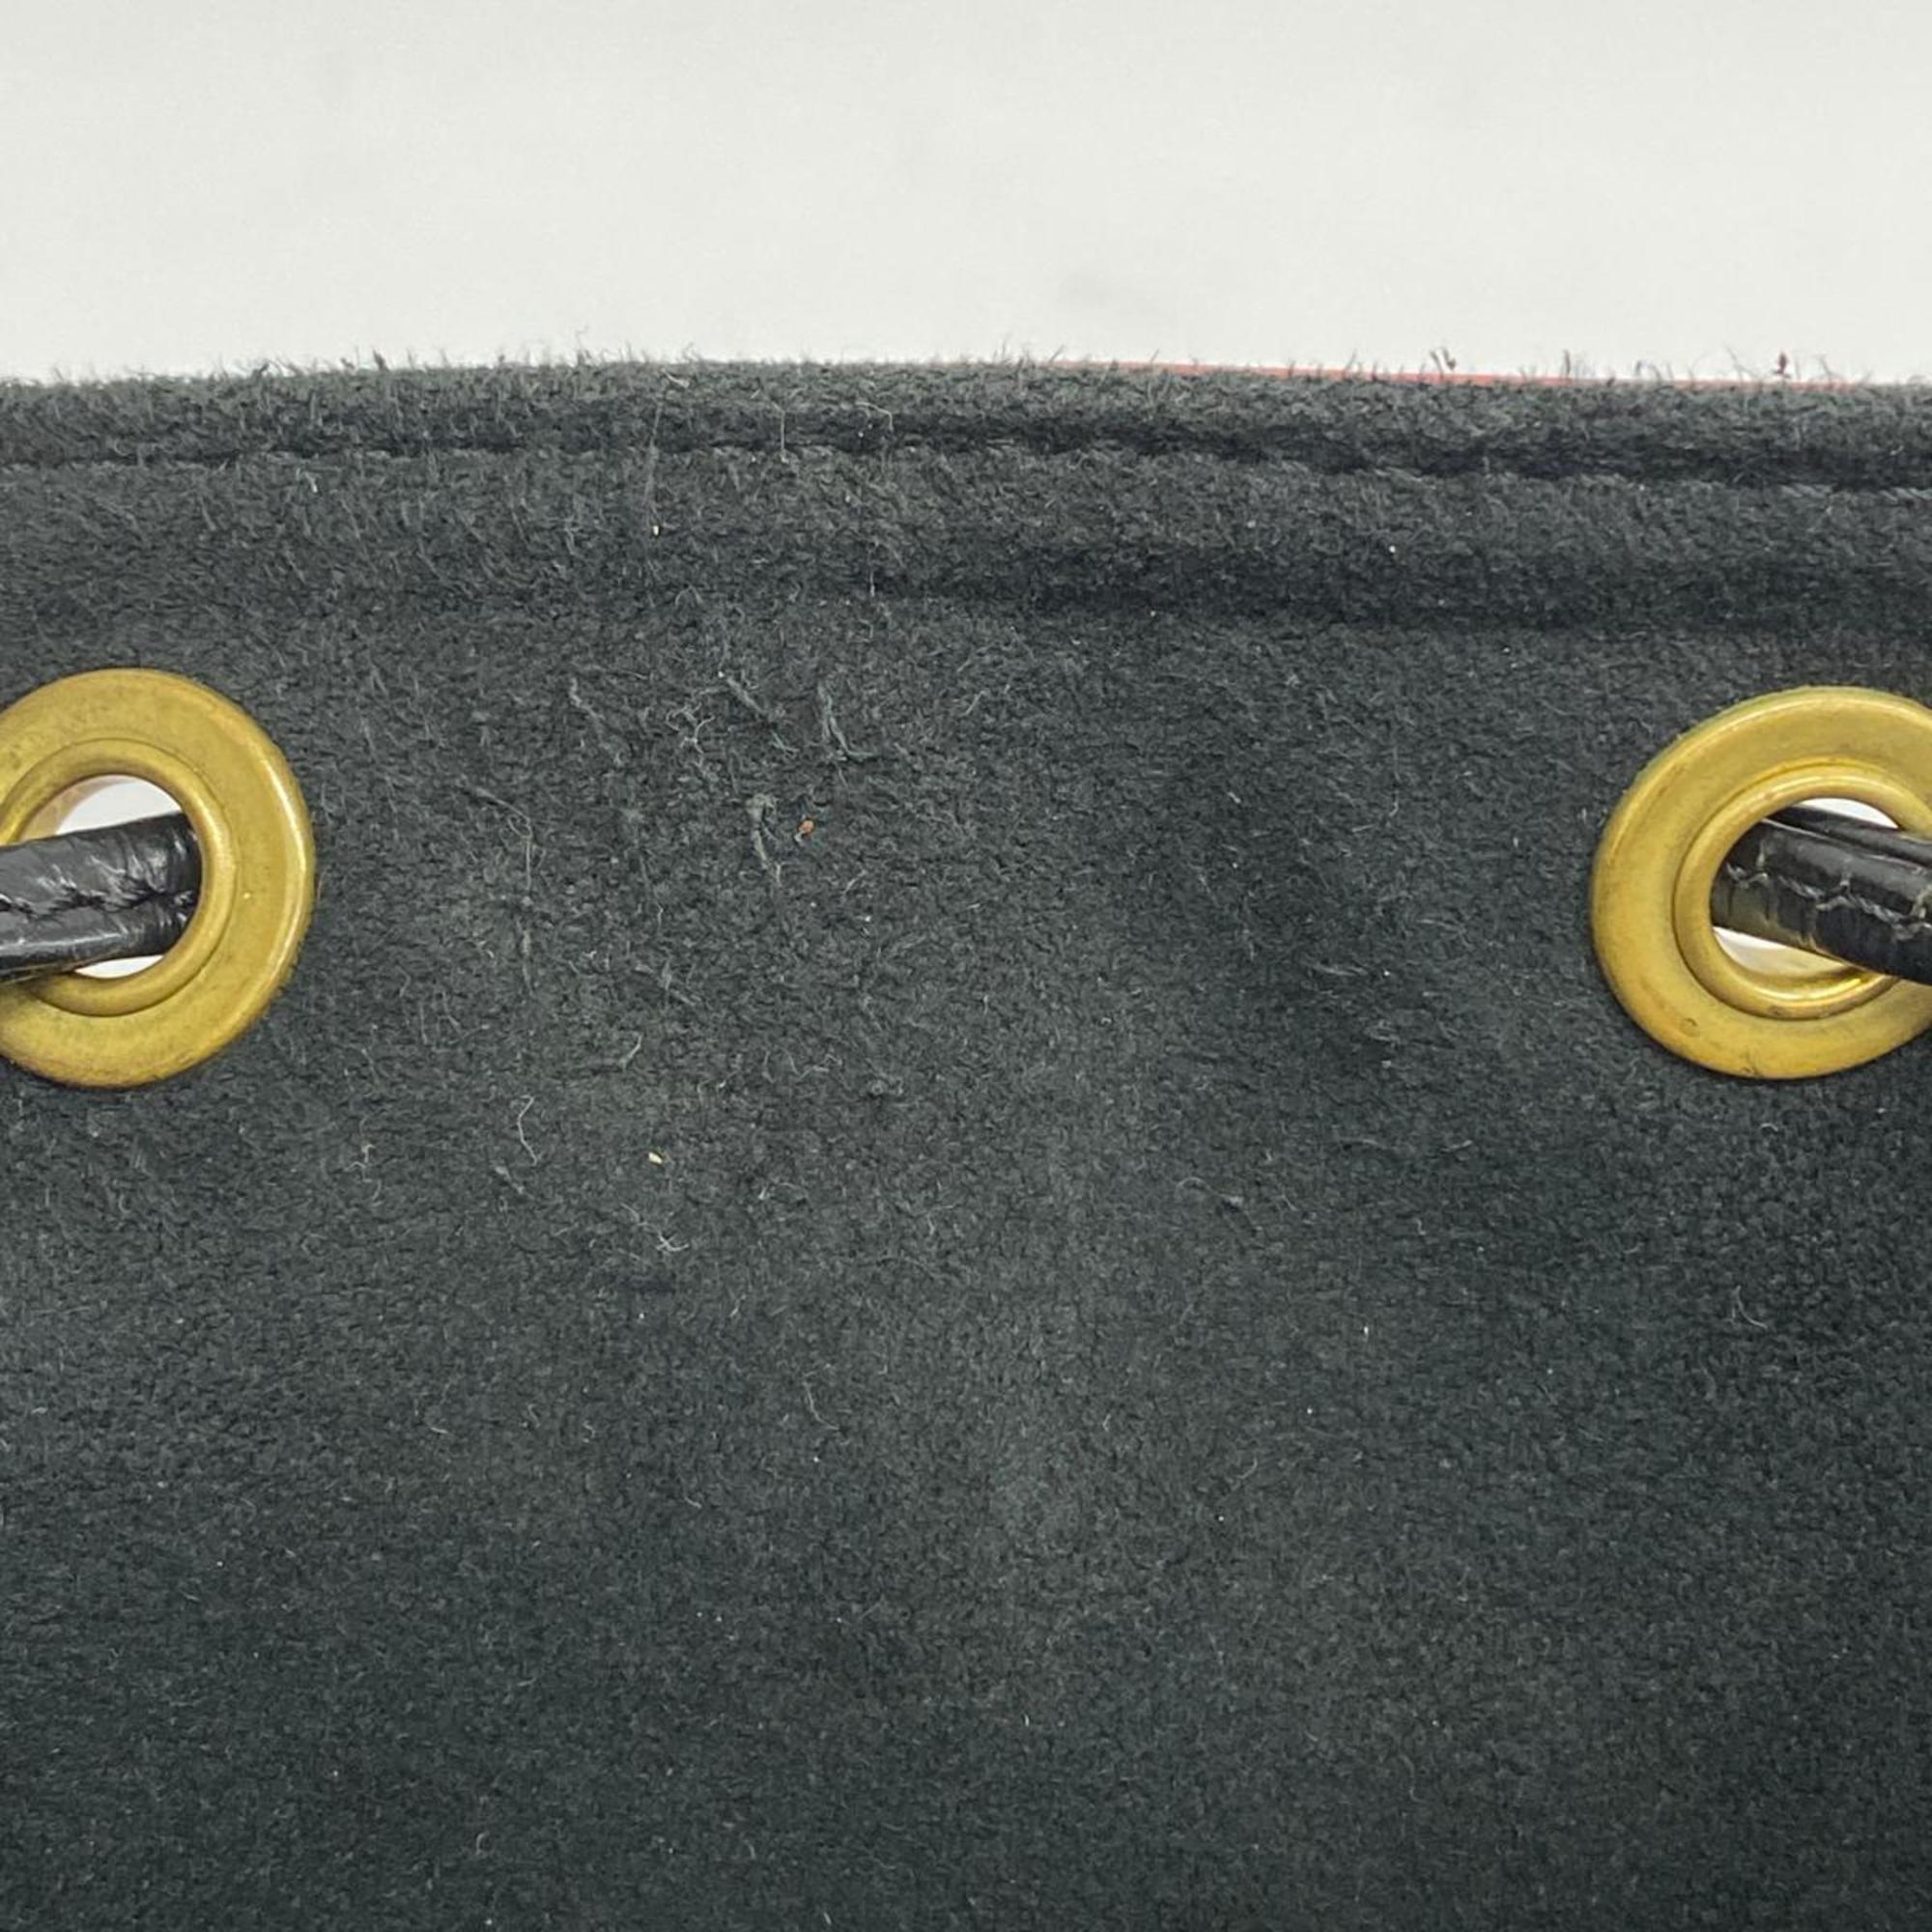 Louis Vuitton Shoulder Bag Epi Petit Noe M44172 Castilian Red Noir Ladies